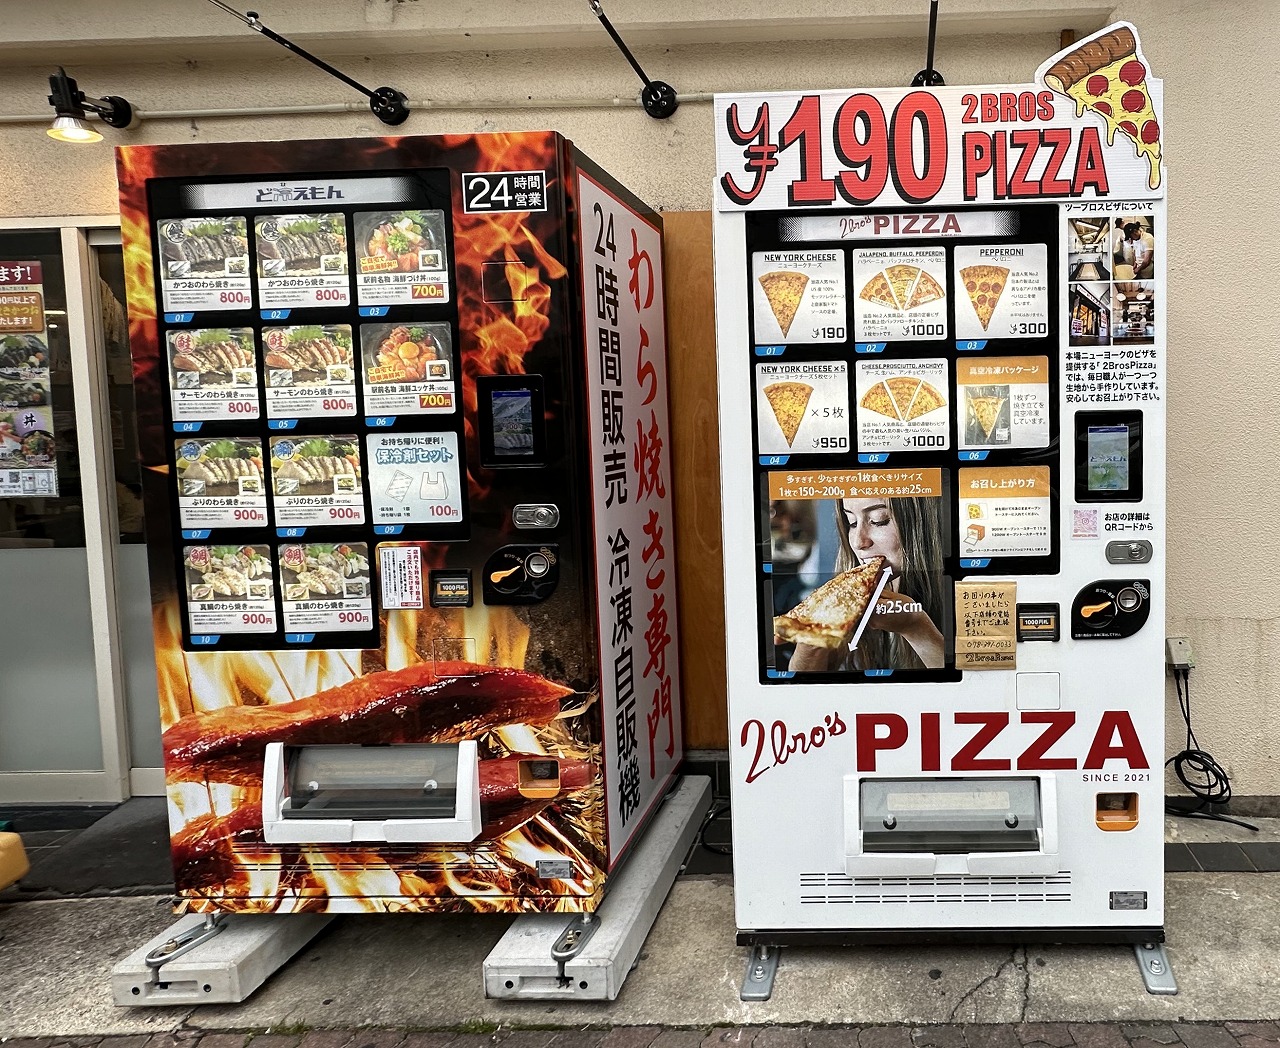  190円ピザ『2brospizza （ツーブロスピザ）』自動販売機の稼働開始！ 